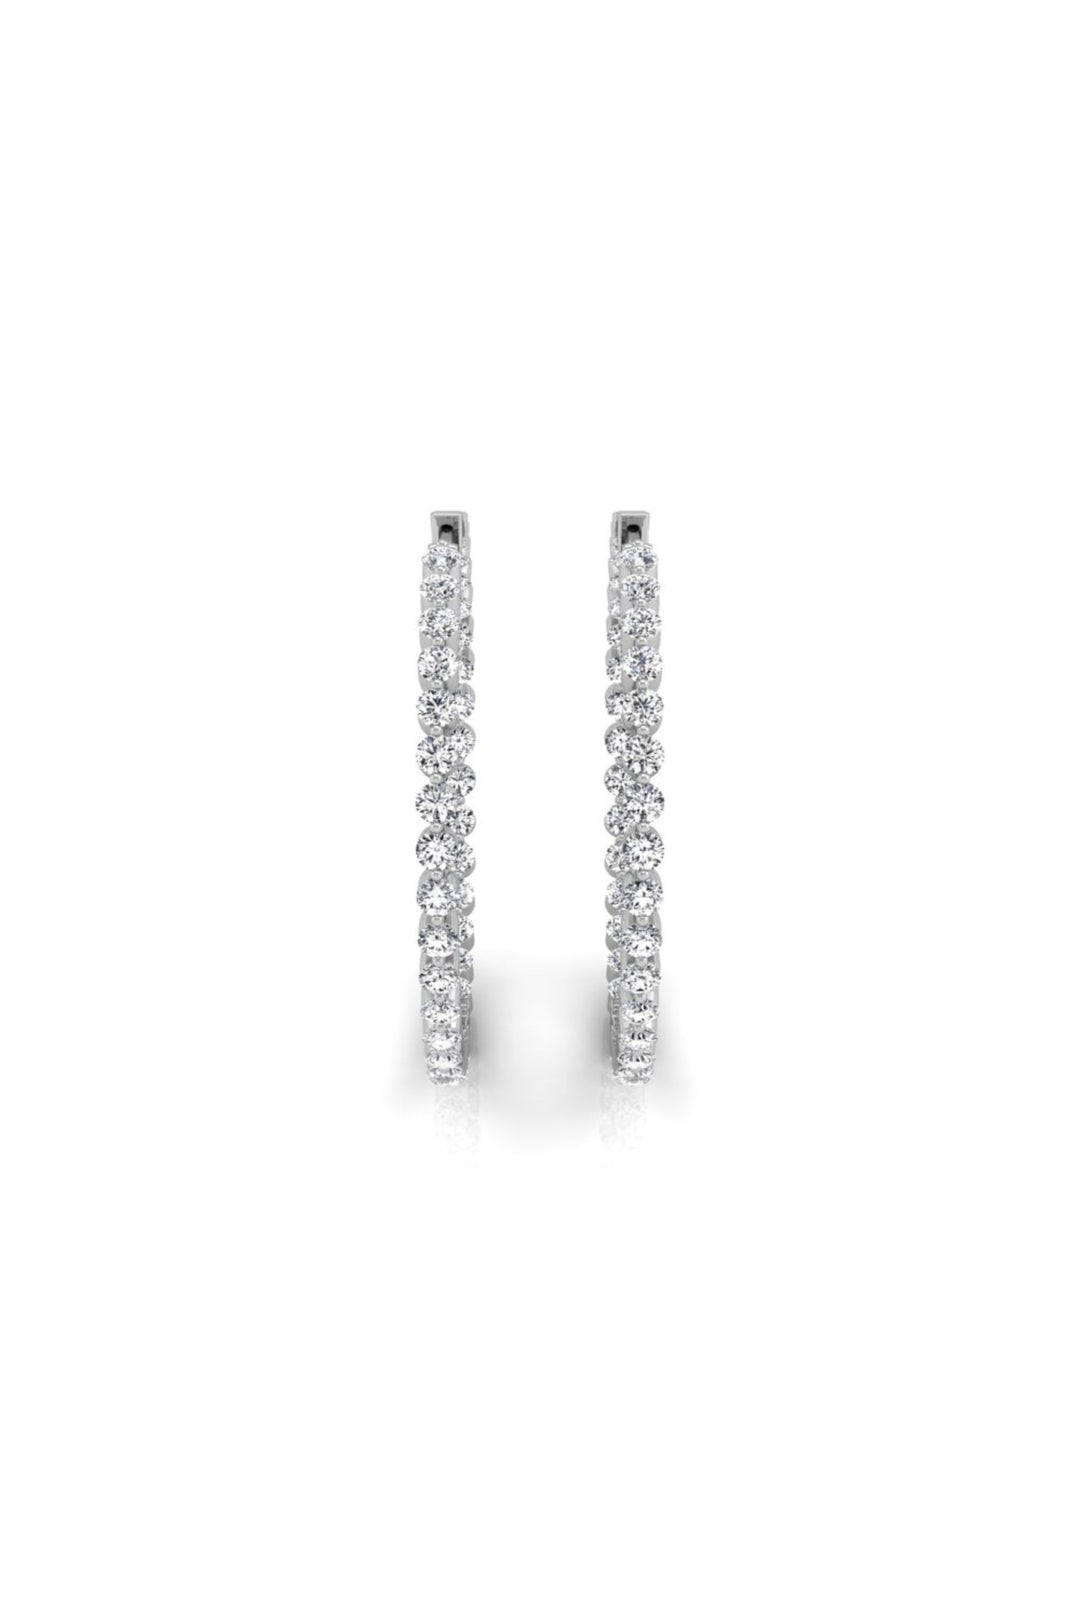 Round Cut Moissanite Diamond Earrings for Women